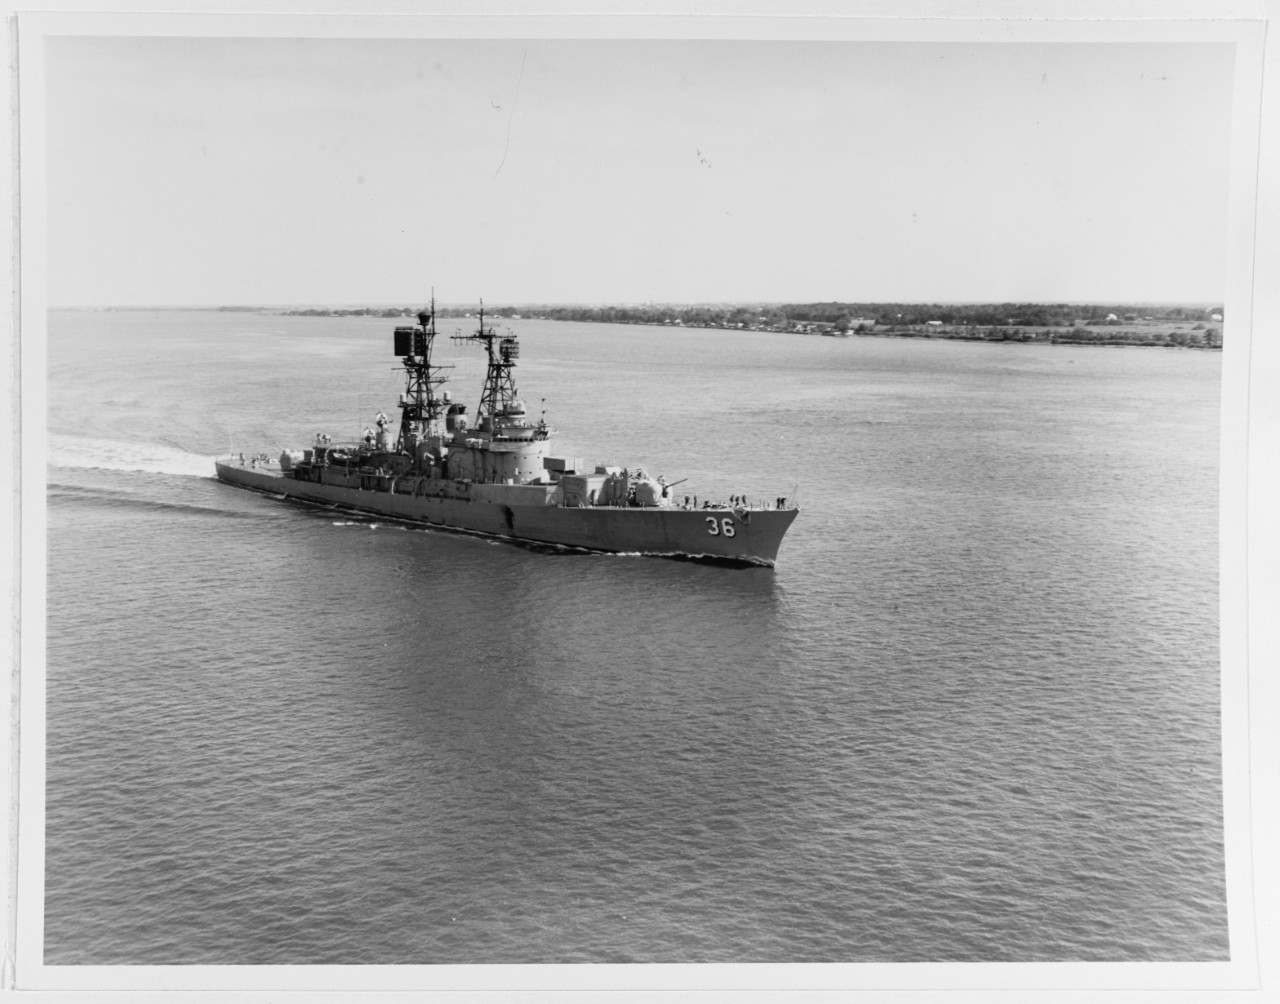 USS John S. McCain (DDG 36)